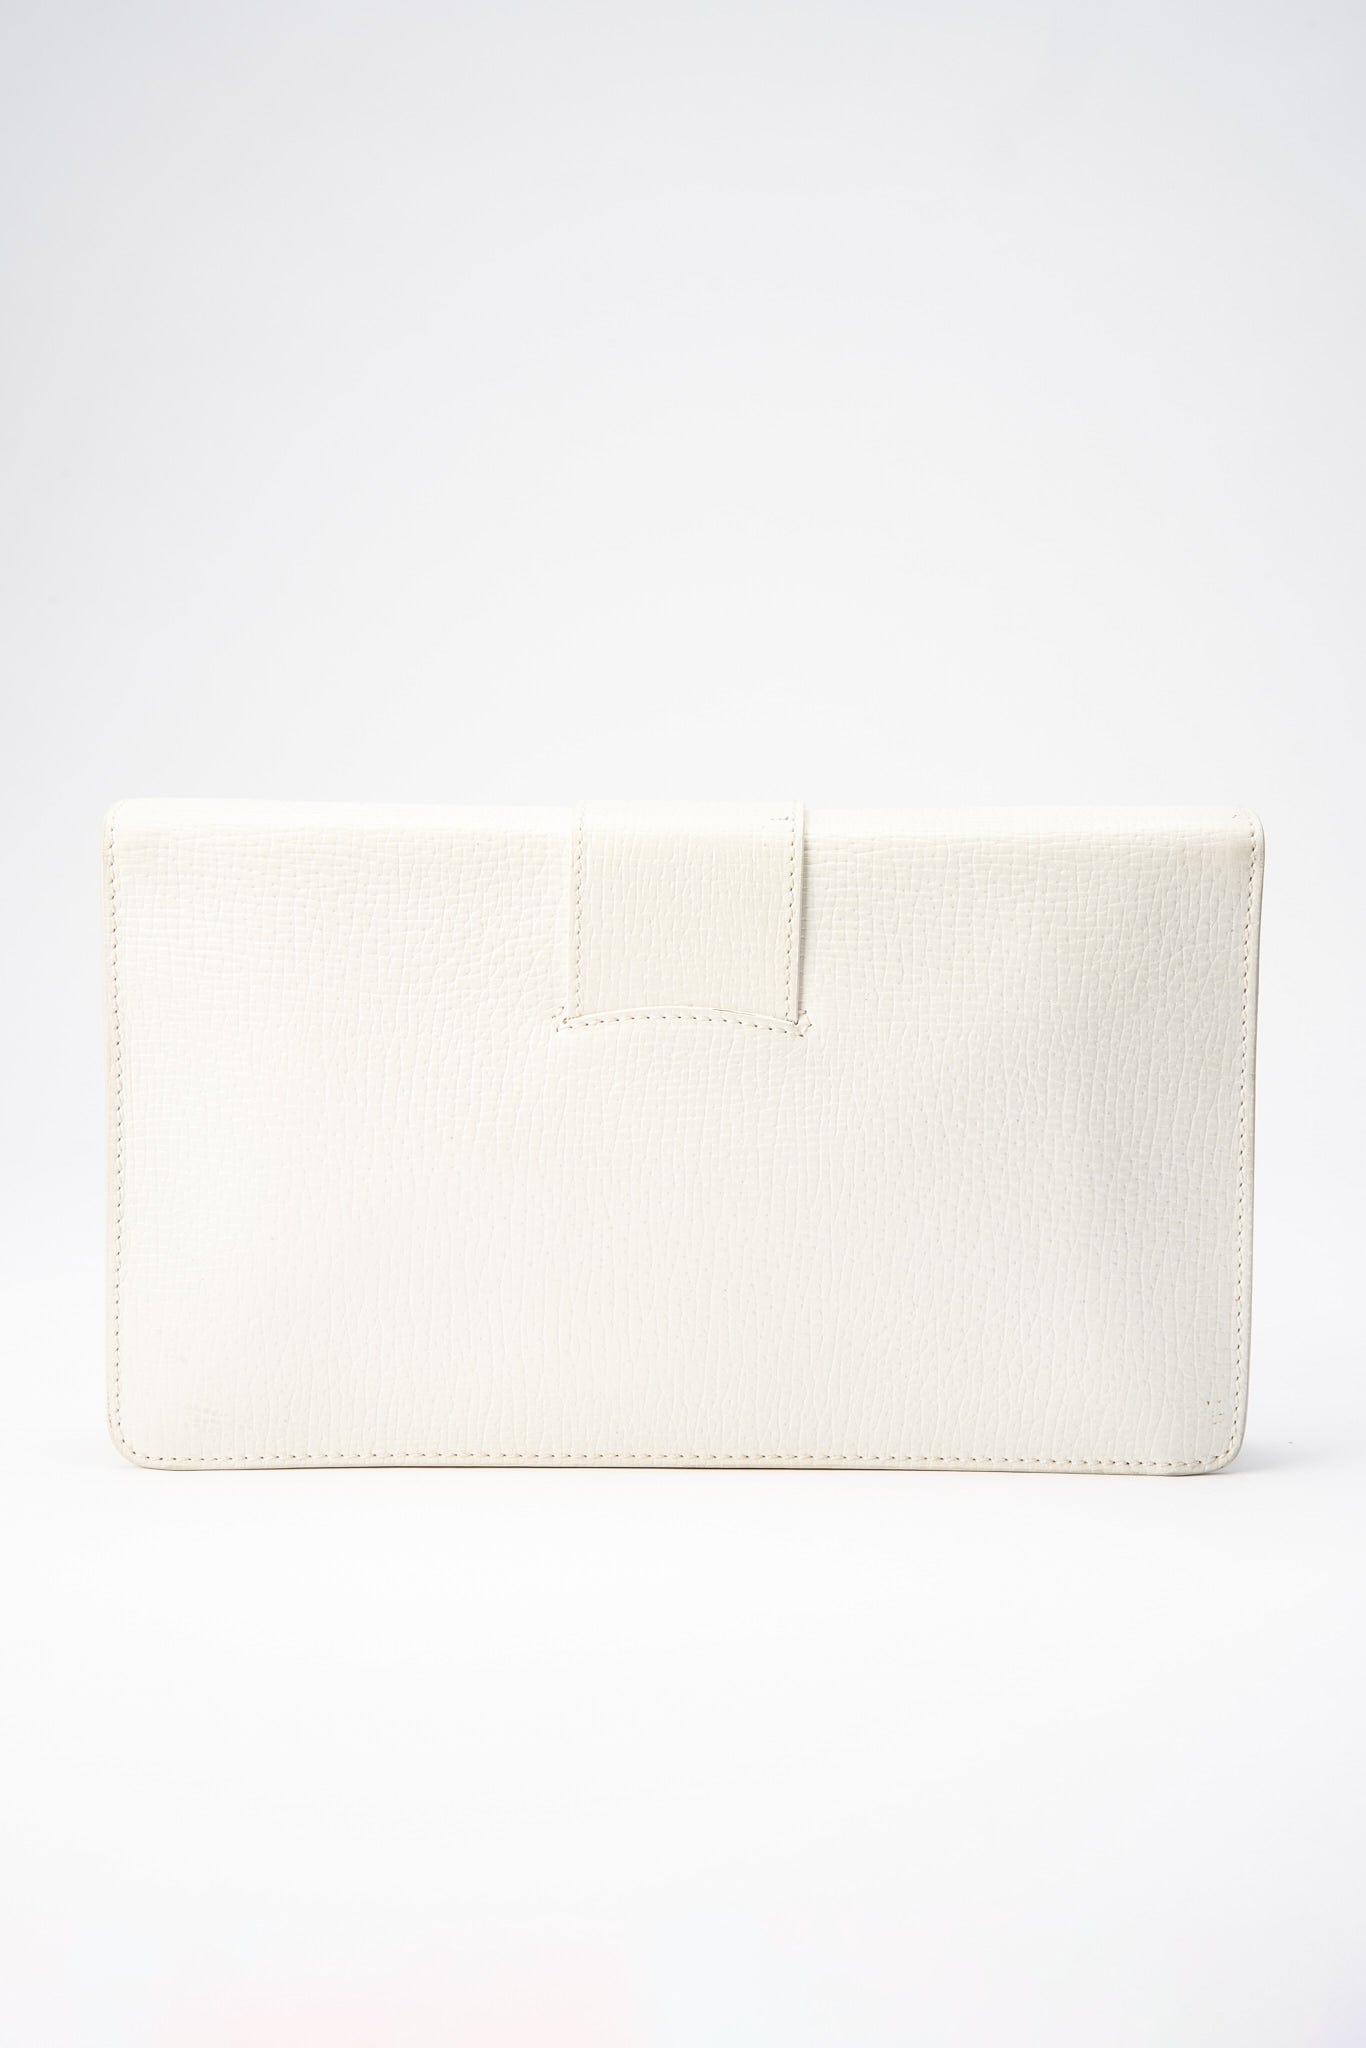 Vintage Loewe White Leather Clutch Bag